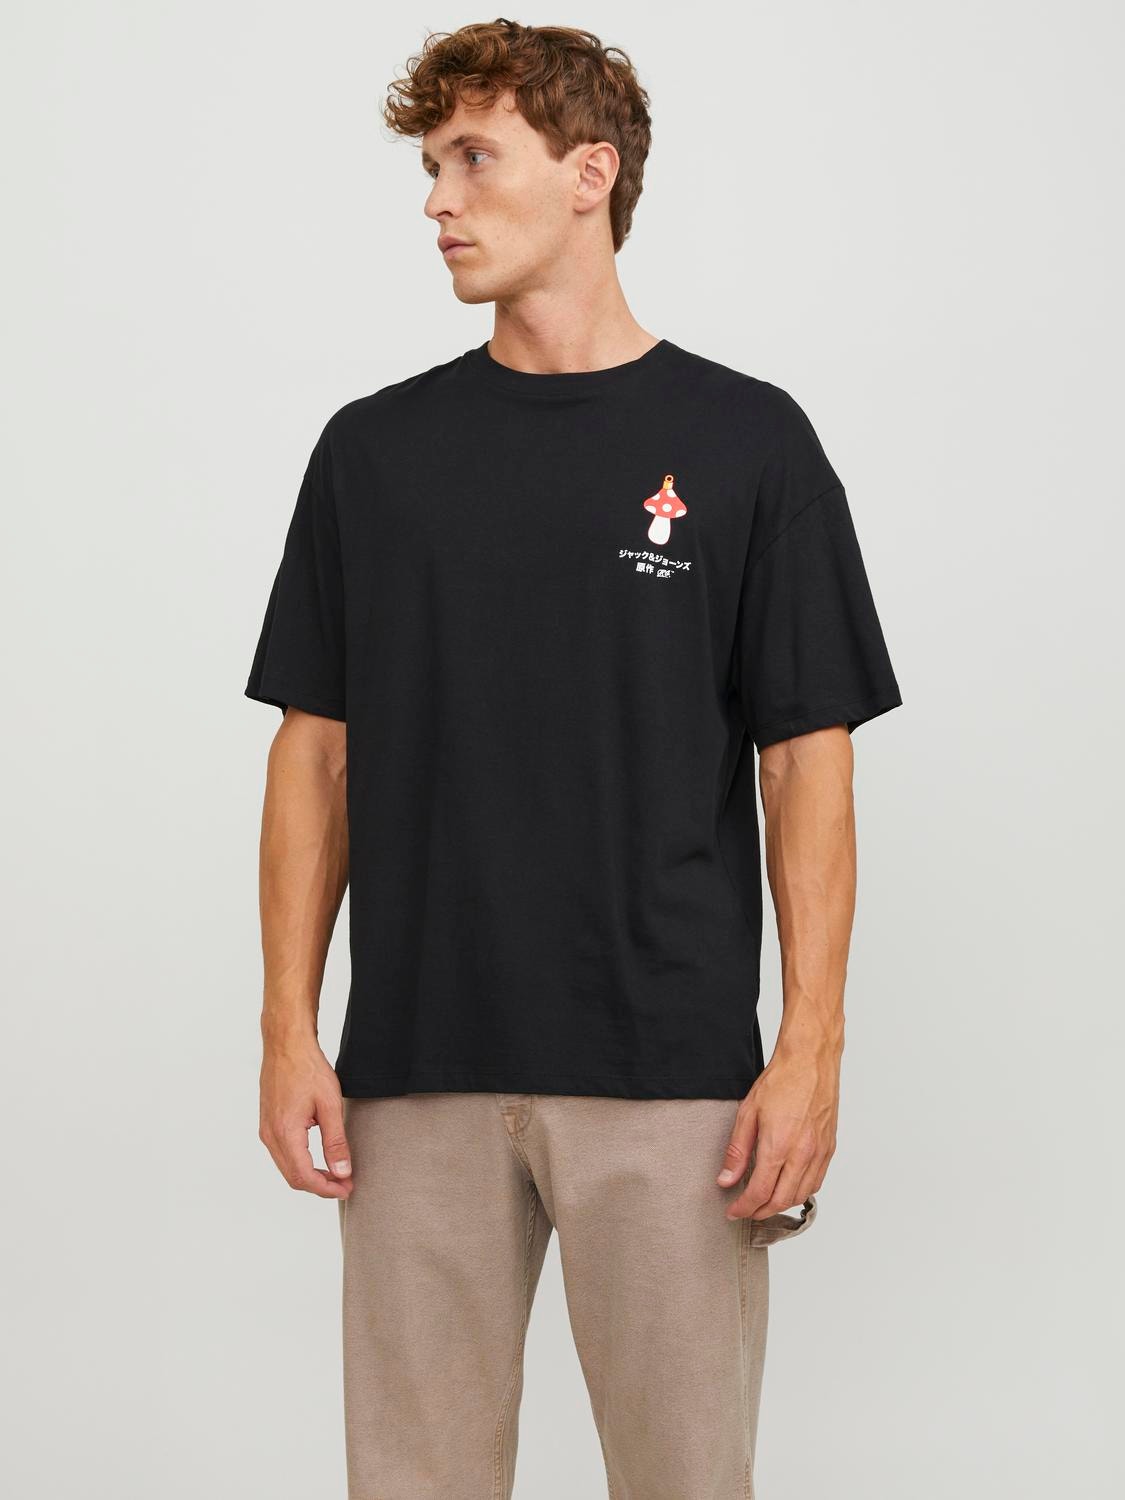 Jack & Jones X-mas Ronde hals T-shirt -Black - 12247683